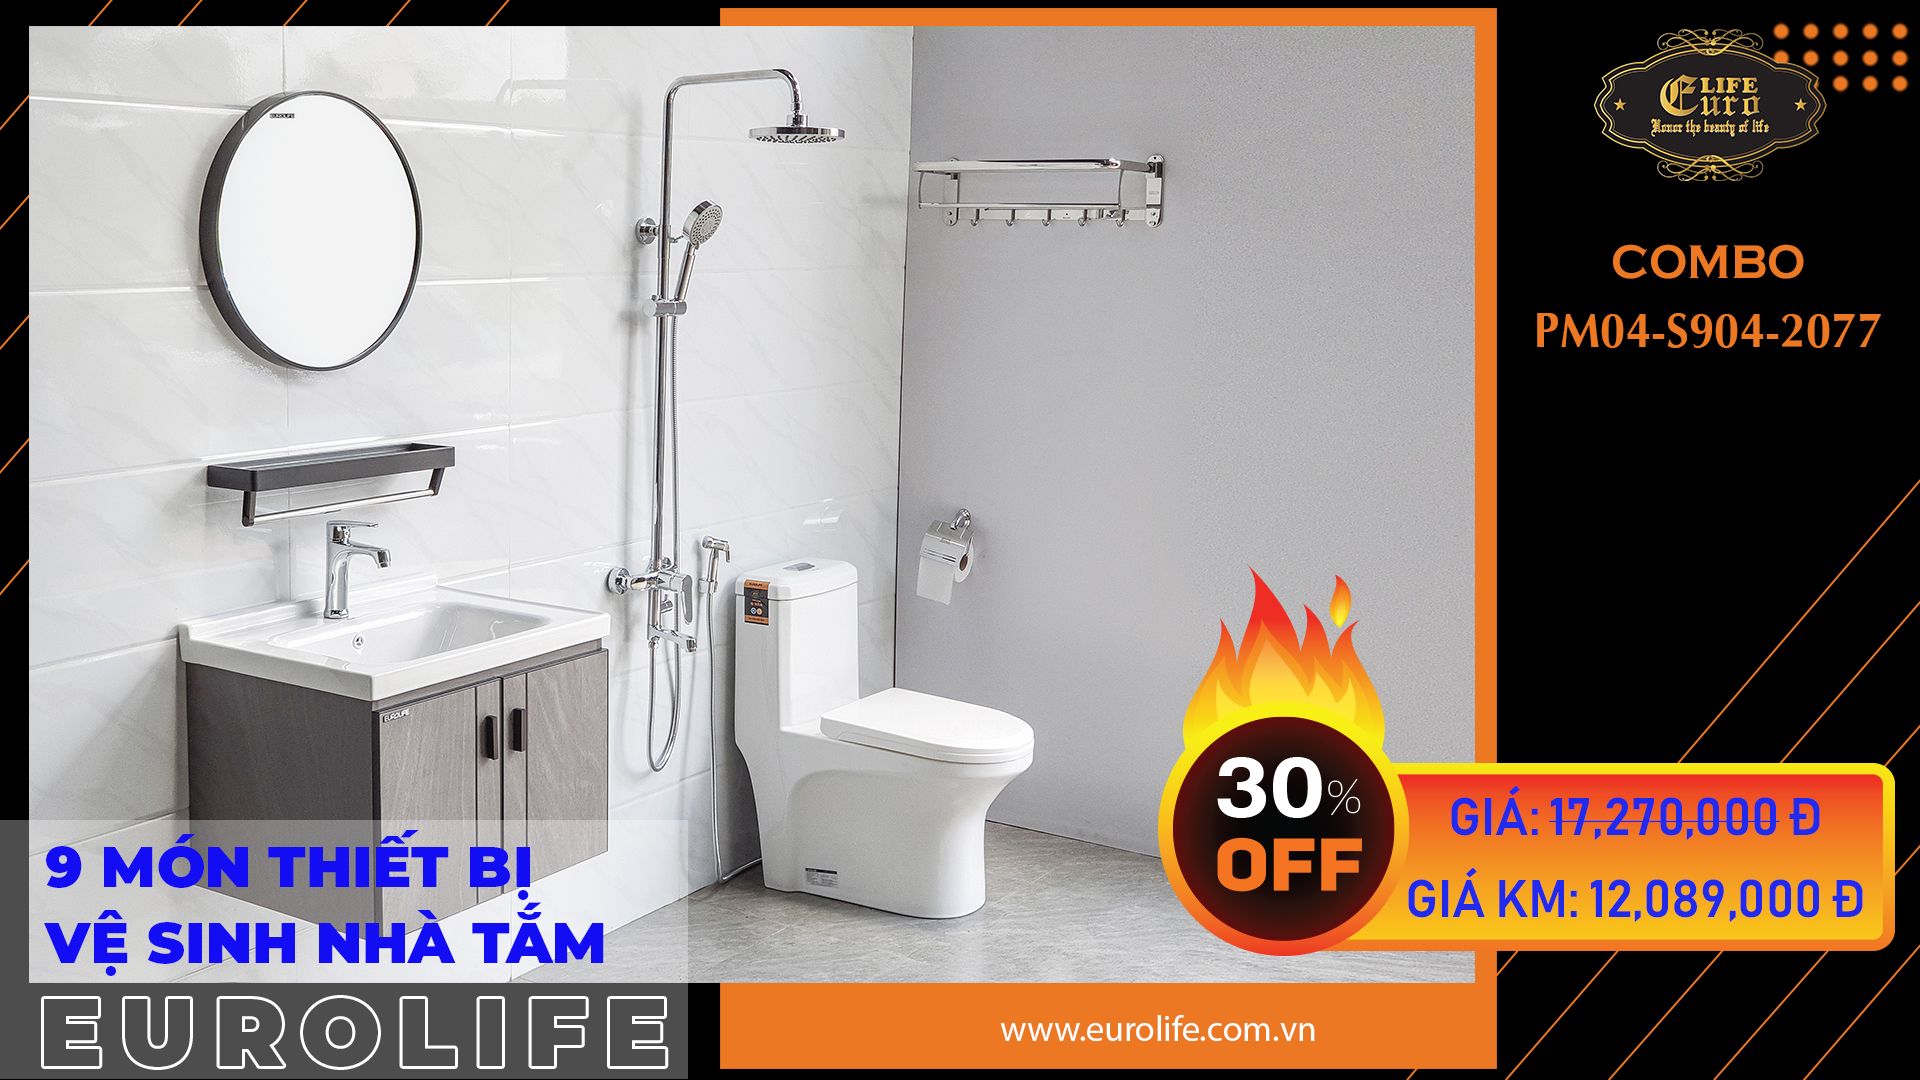  Trọn bộ thiết bị vệ sinh nhà tắm Eurolife CB PM04-S904-2077 